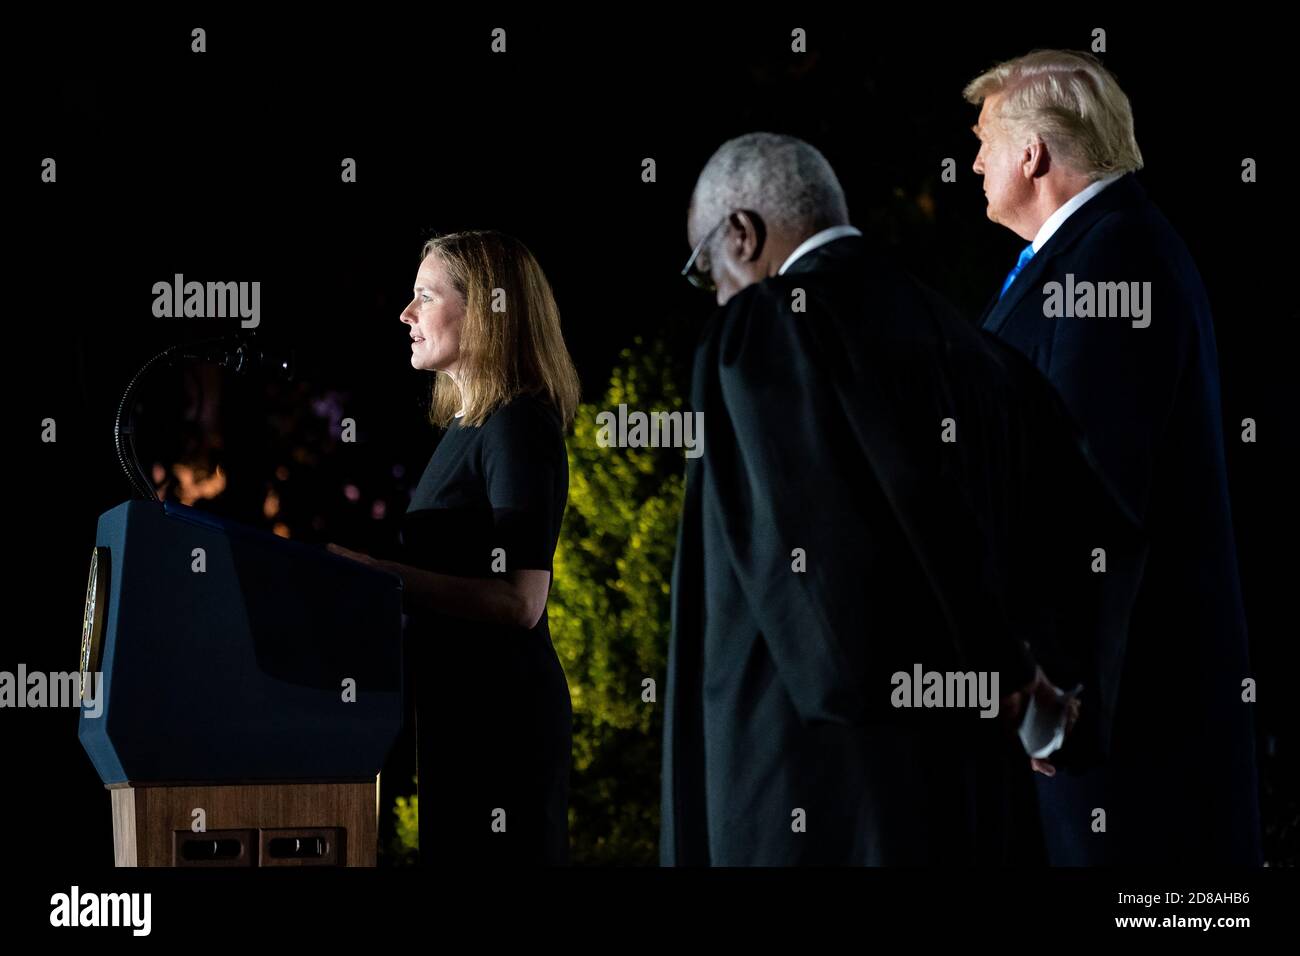 Amy Coney Barrett, Associate Justice des Obersten Gerichtshofs der Vereinigten Staaten, hält am Montag, den 26. Oktober 2020, während ihrer Vereidigung auf dem South Lawn des Weißen Hauses Bemerkungen. (USA) Stockfoto